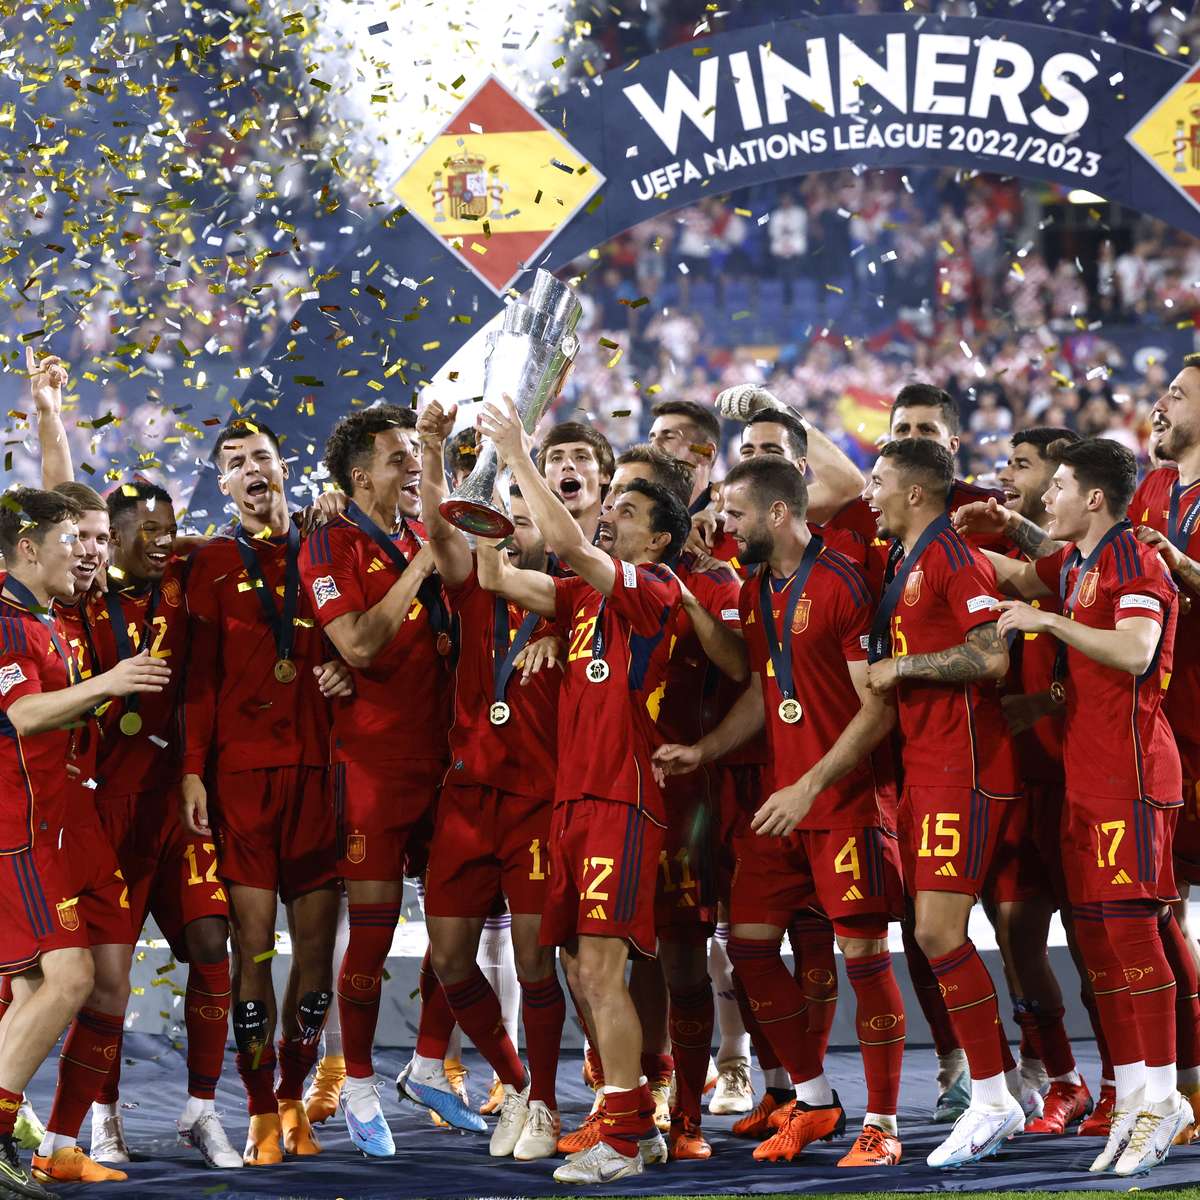 Espanha busca revanche por derrota no último confronto com Inglaterra